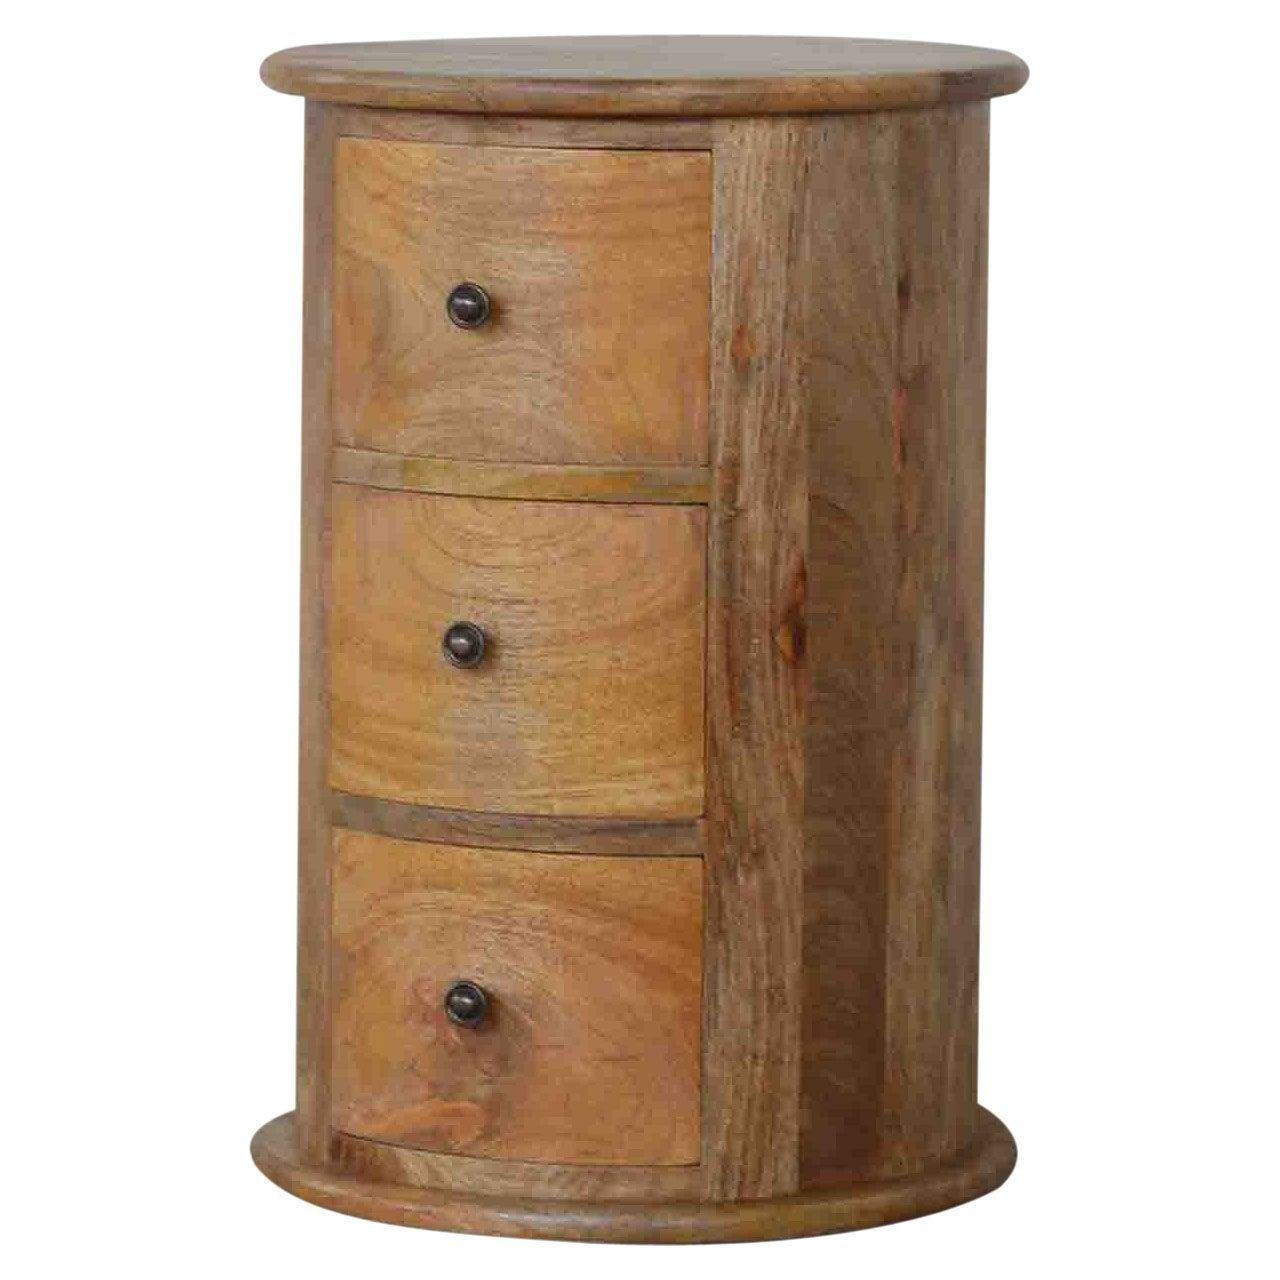 3 drawer drum chest - crimblefest furniture - image 5